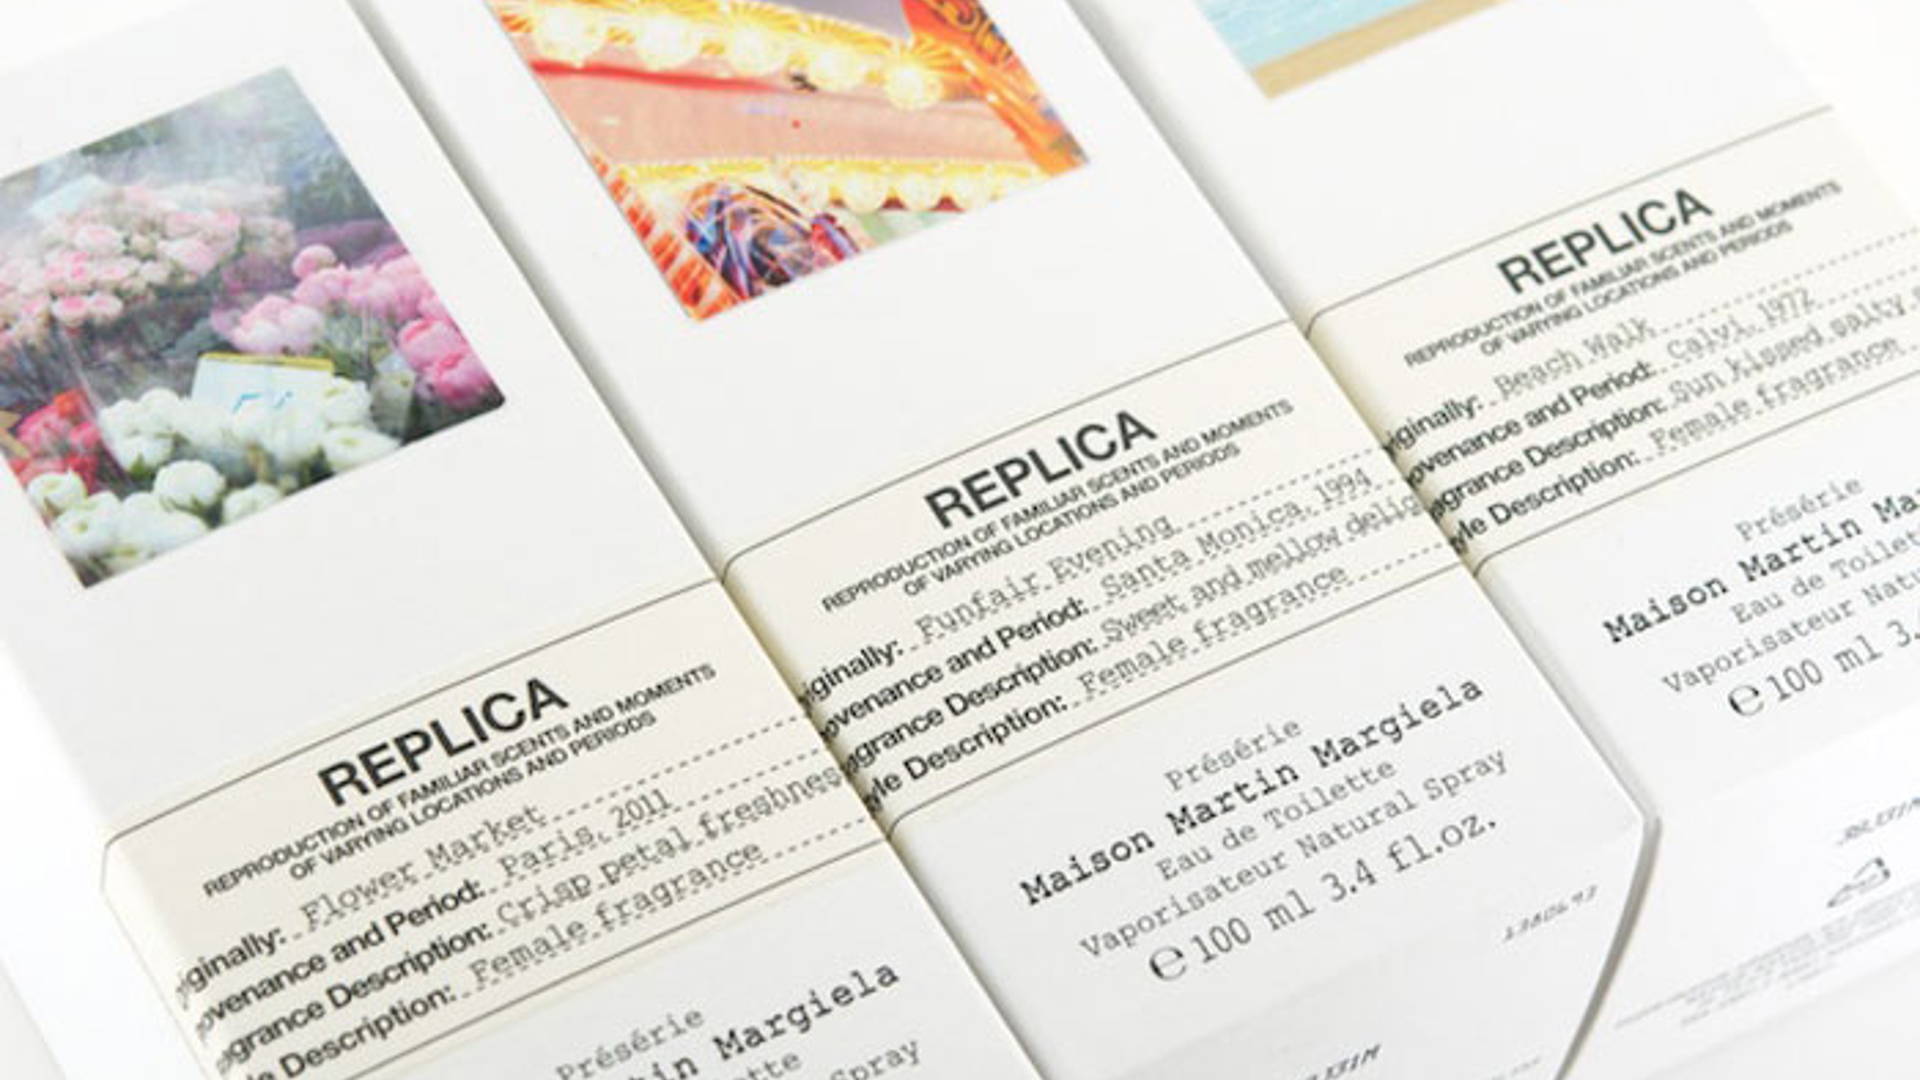 Maison Martin Margiela's Replica Collection | Dieline - Design